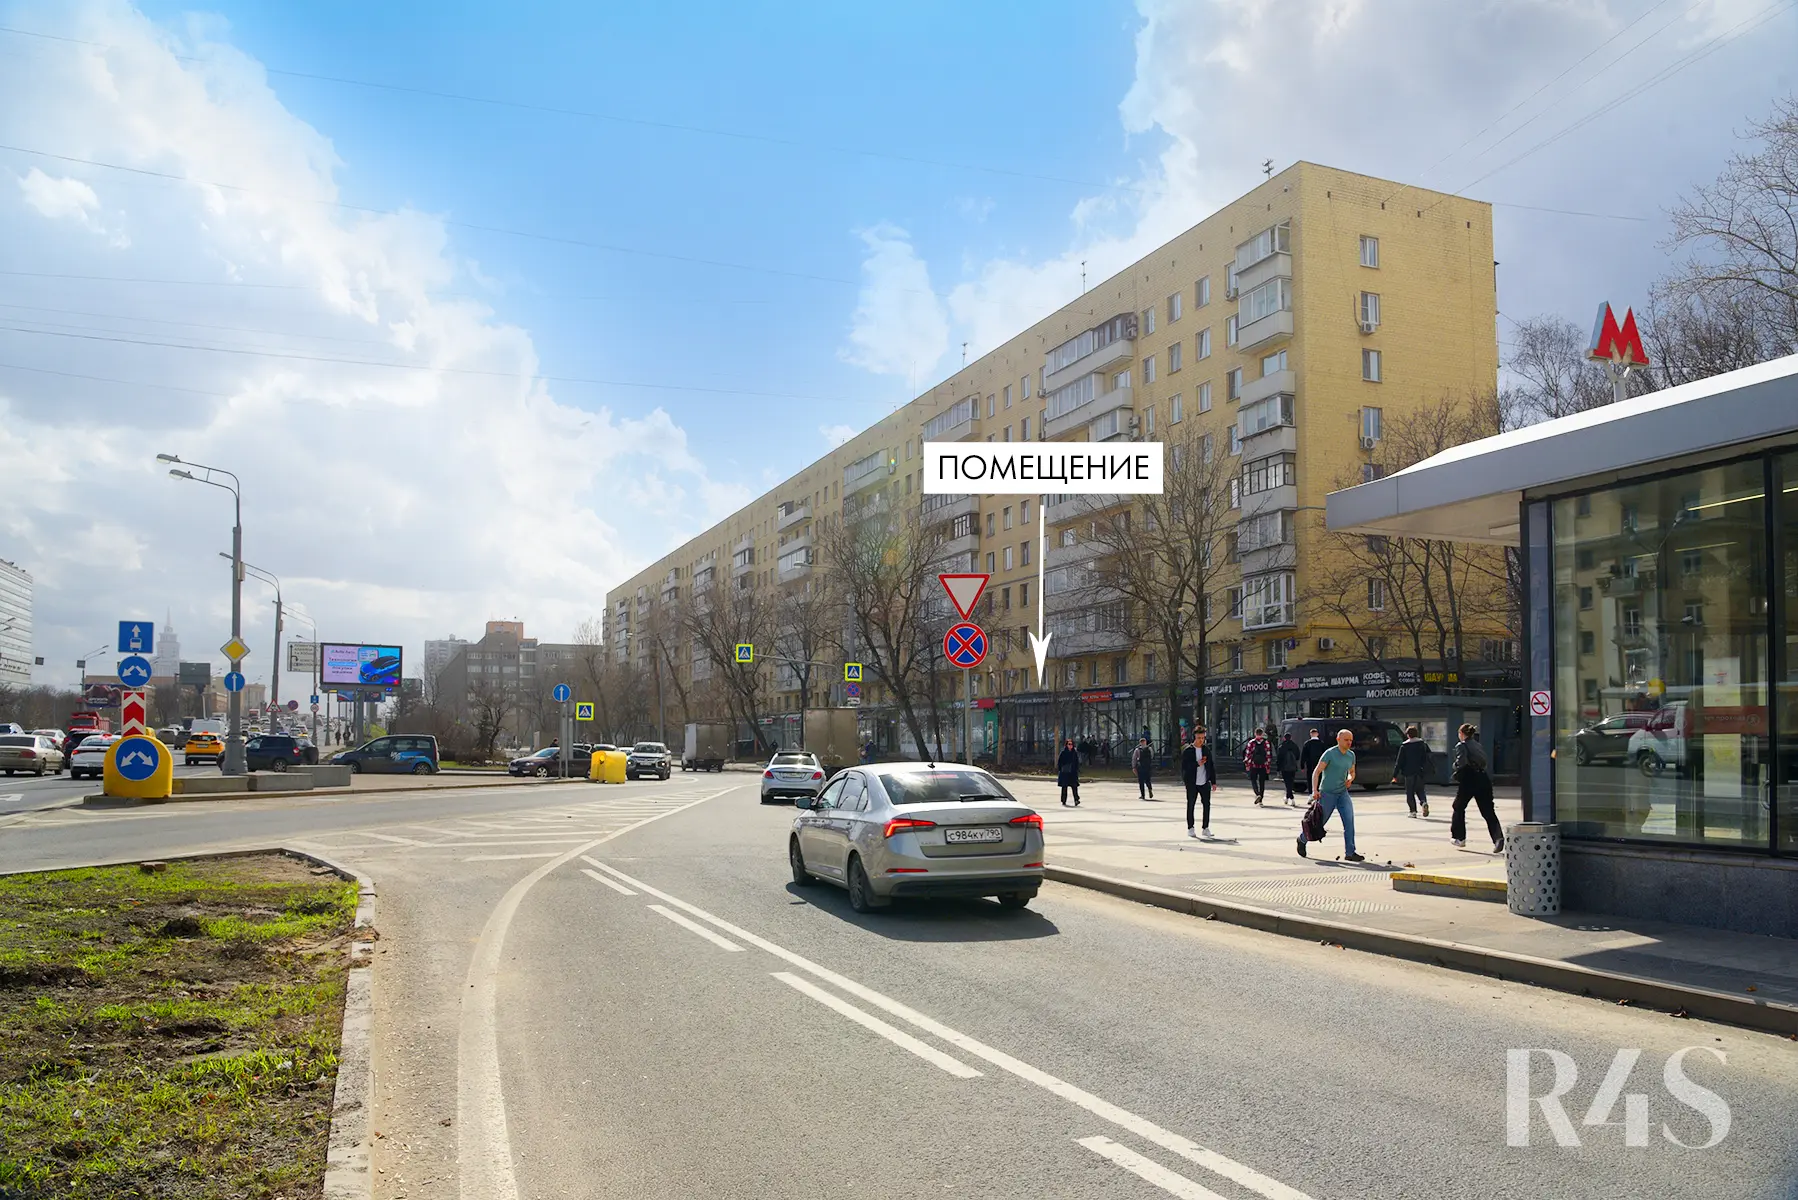 Продажа готового арендного бизнеса площадью 40.5 м2 в Москве: Ленинградское шоссе, 9к1 R4S | Realty4Sale